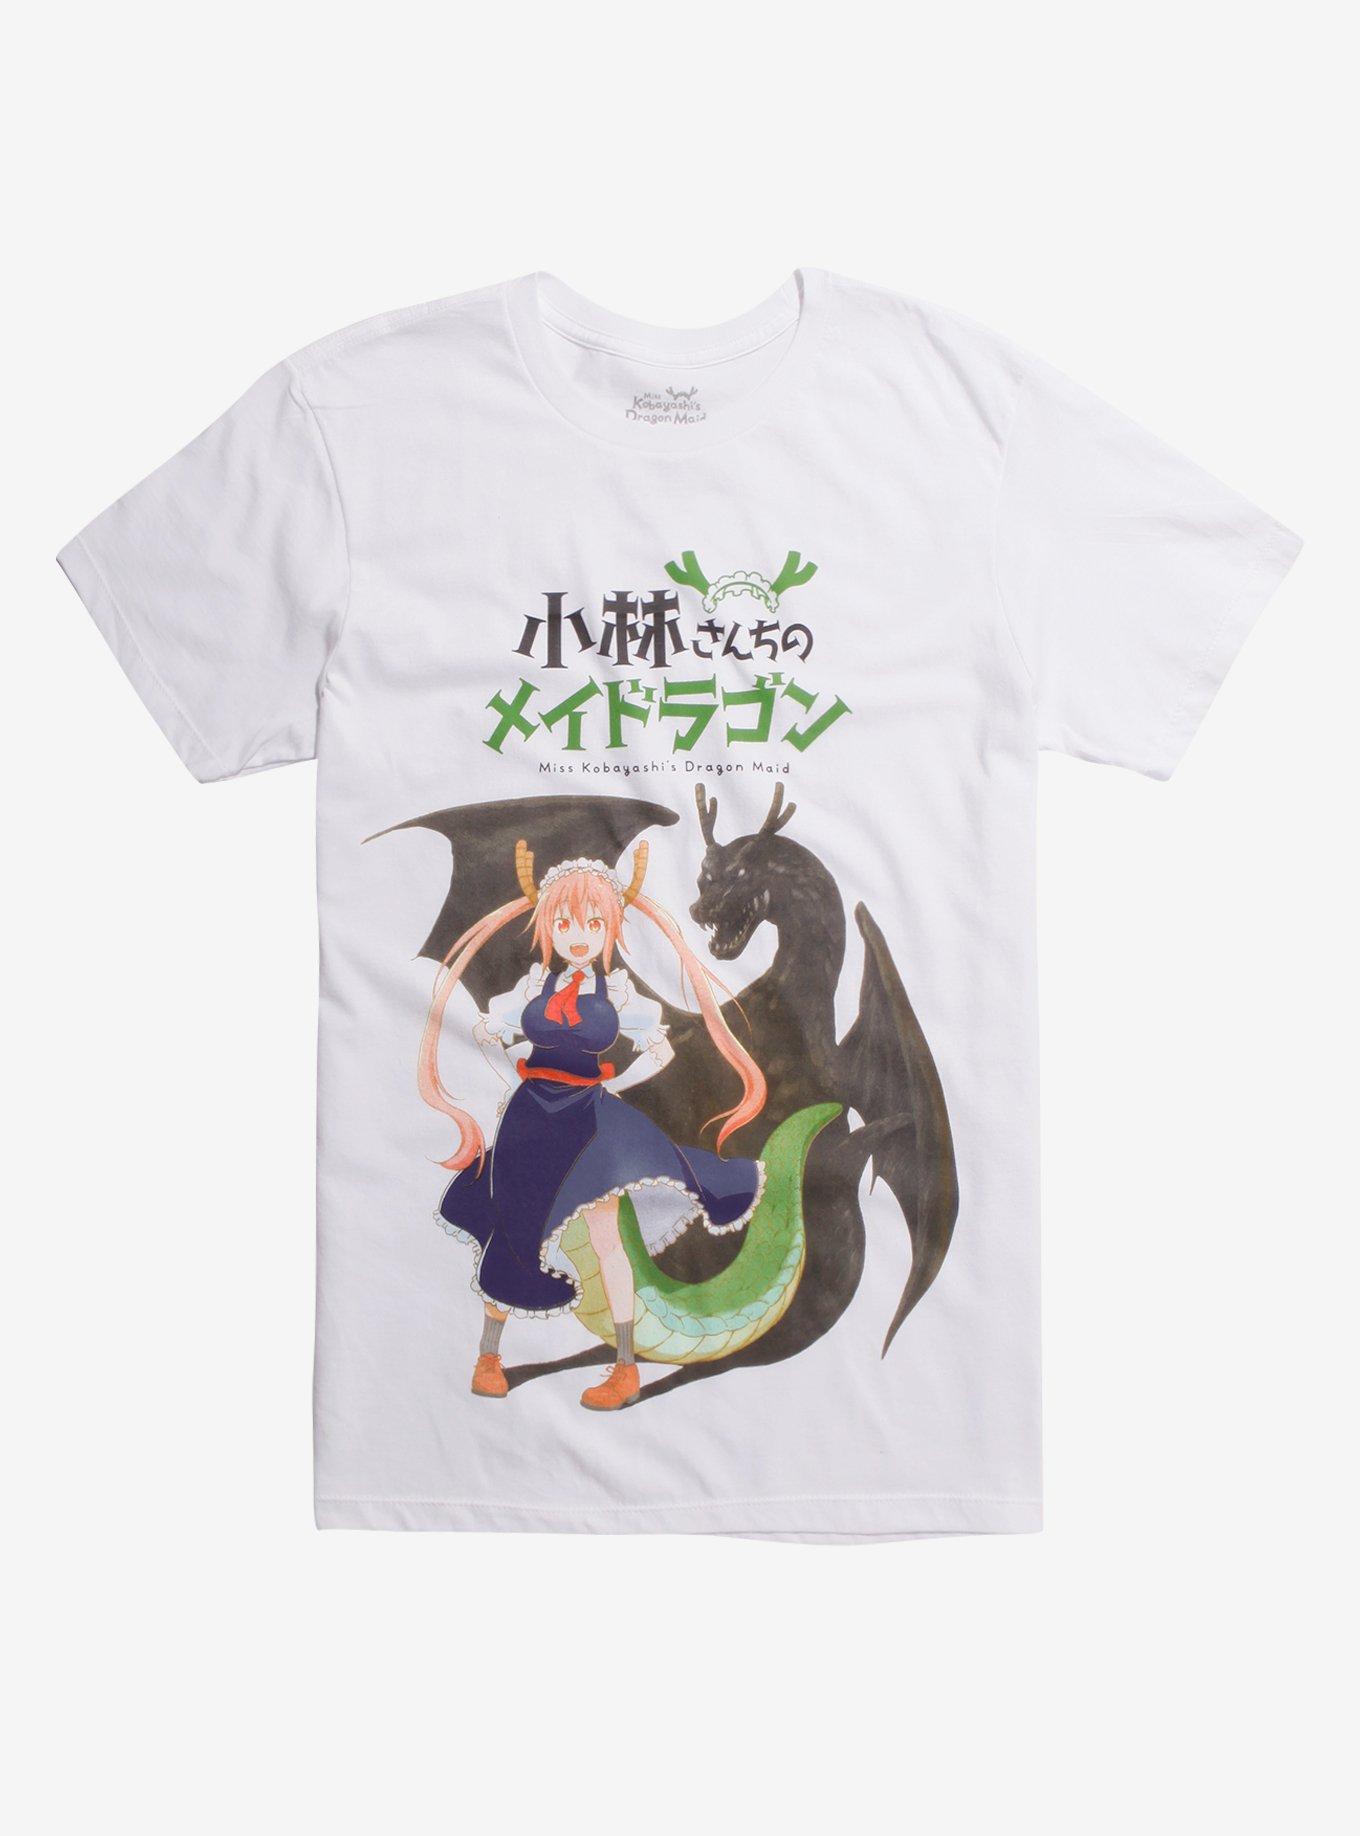 Miss Kobayashi's Dragon Maid Kanji T-Shirt Hot Topic Exclusive, WHITE, hi-res